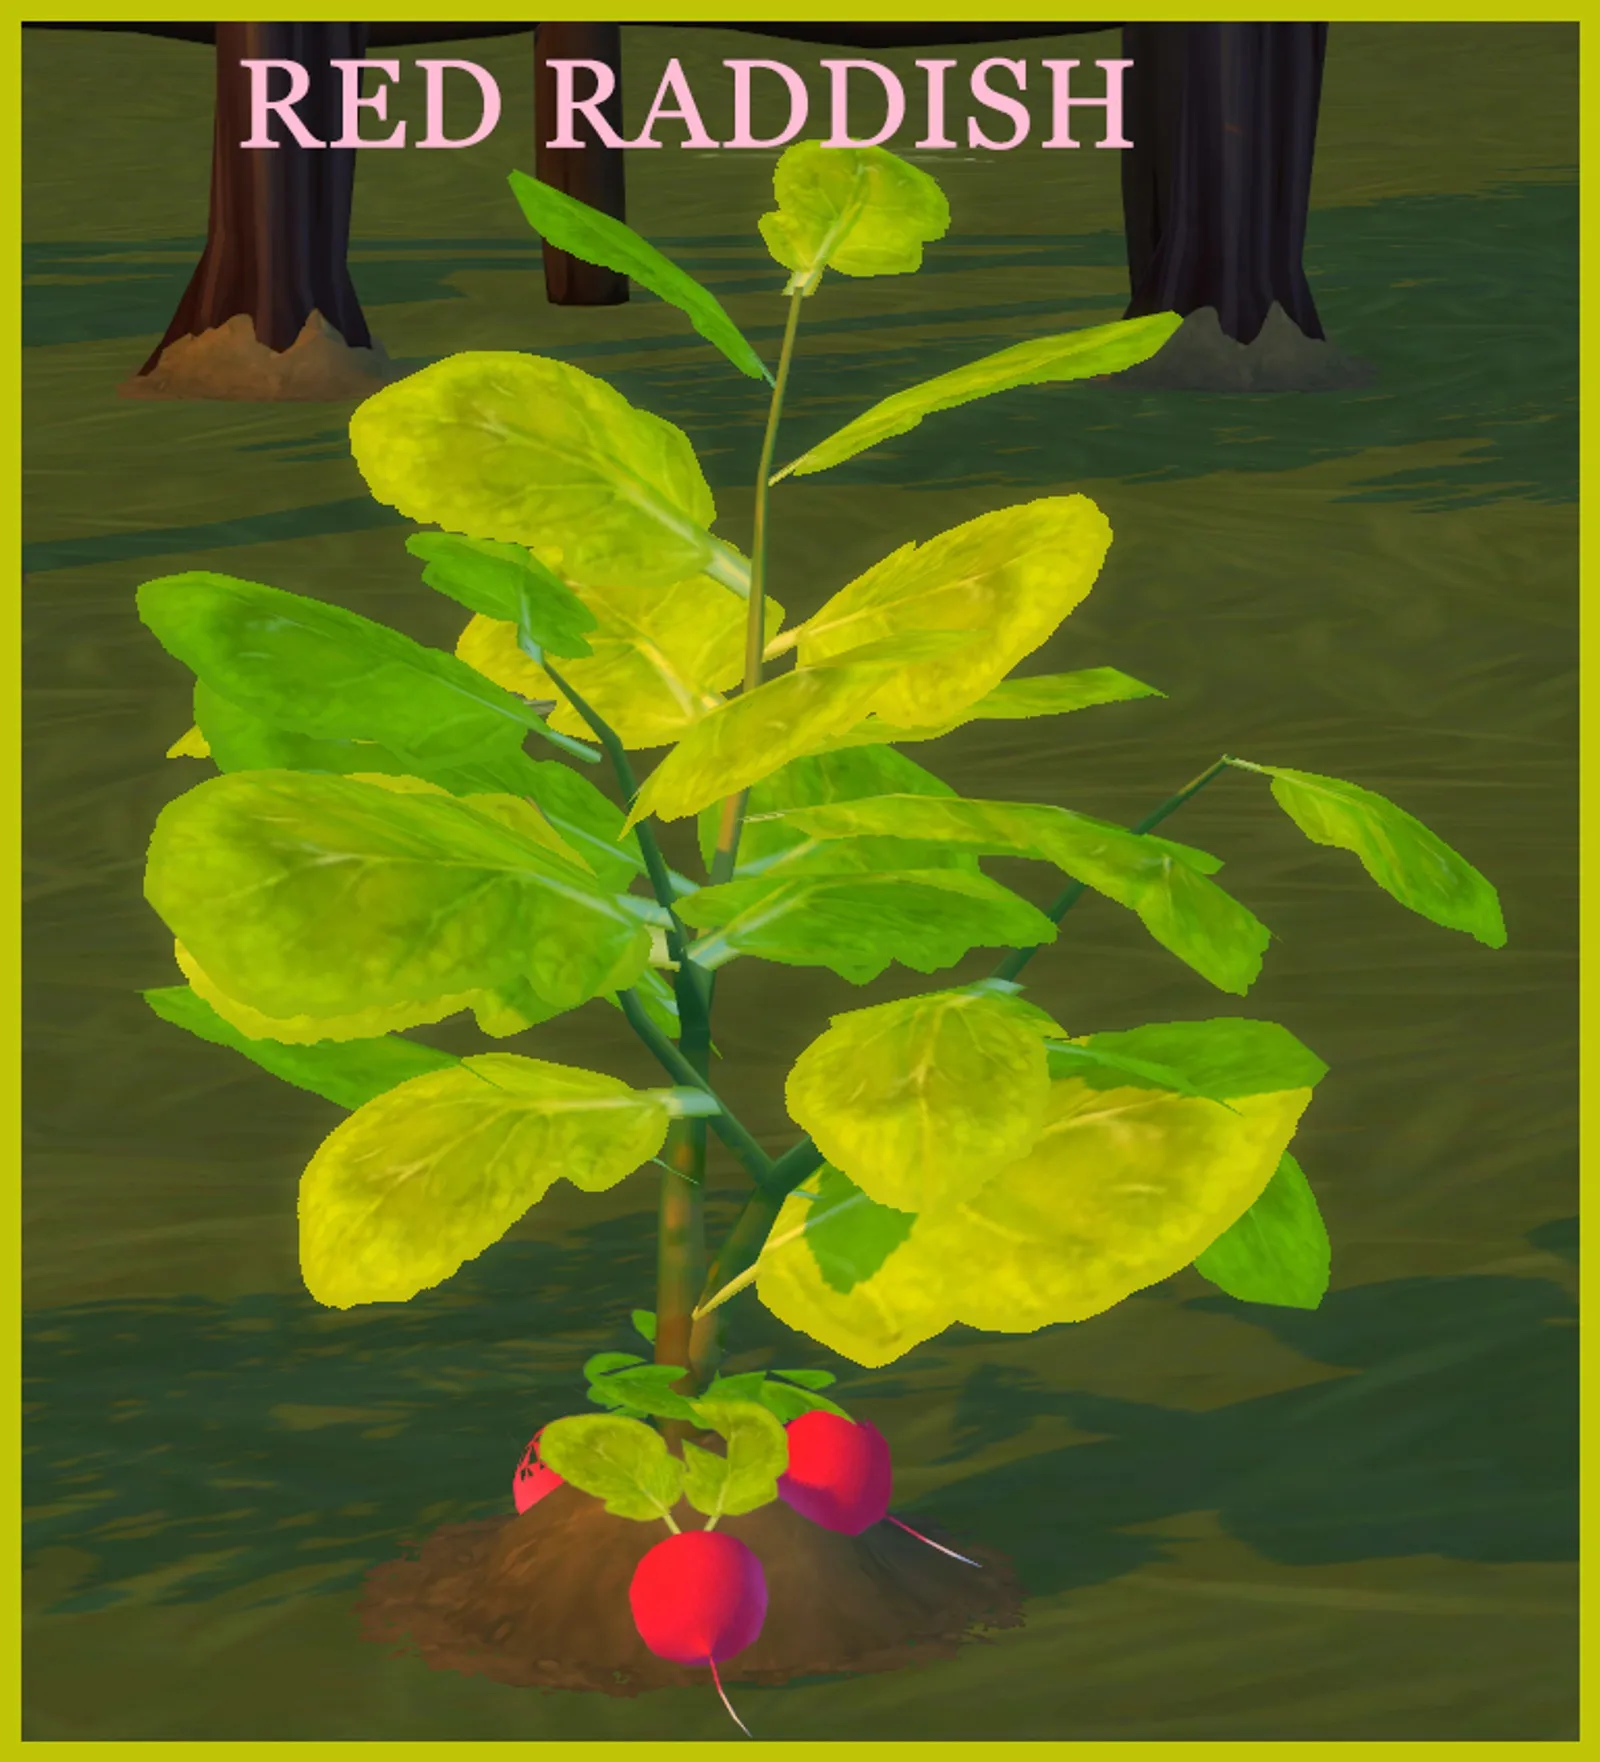 RED RADDISH HARVESTABLE